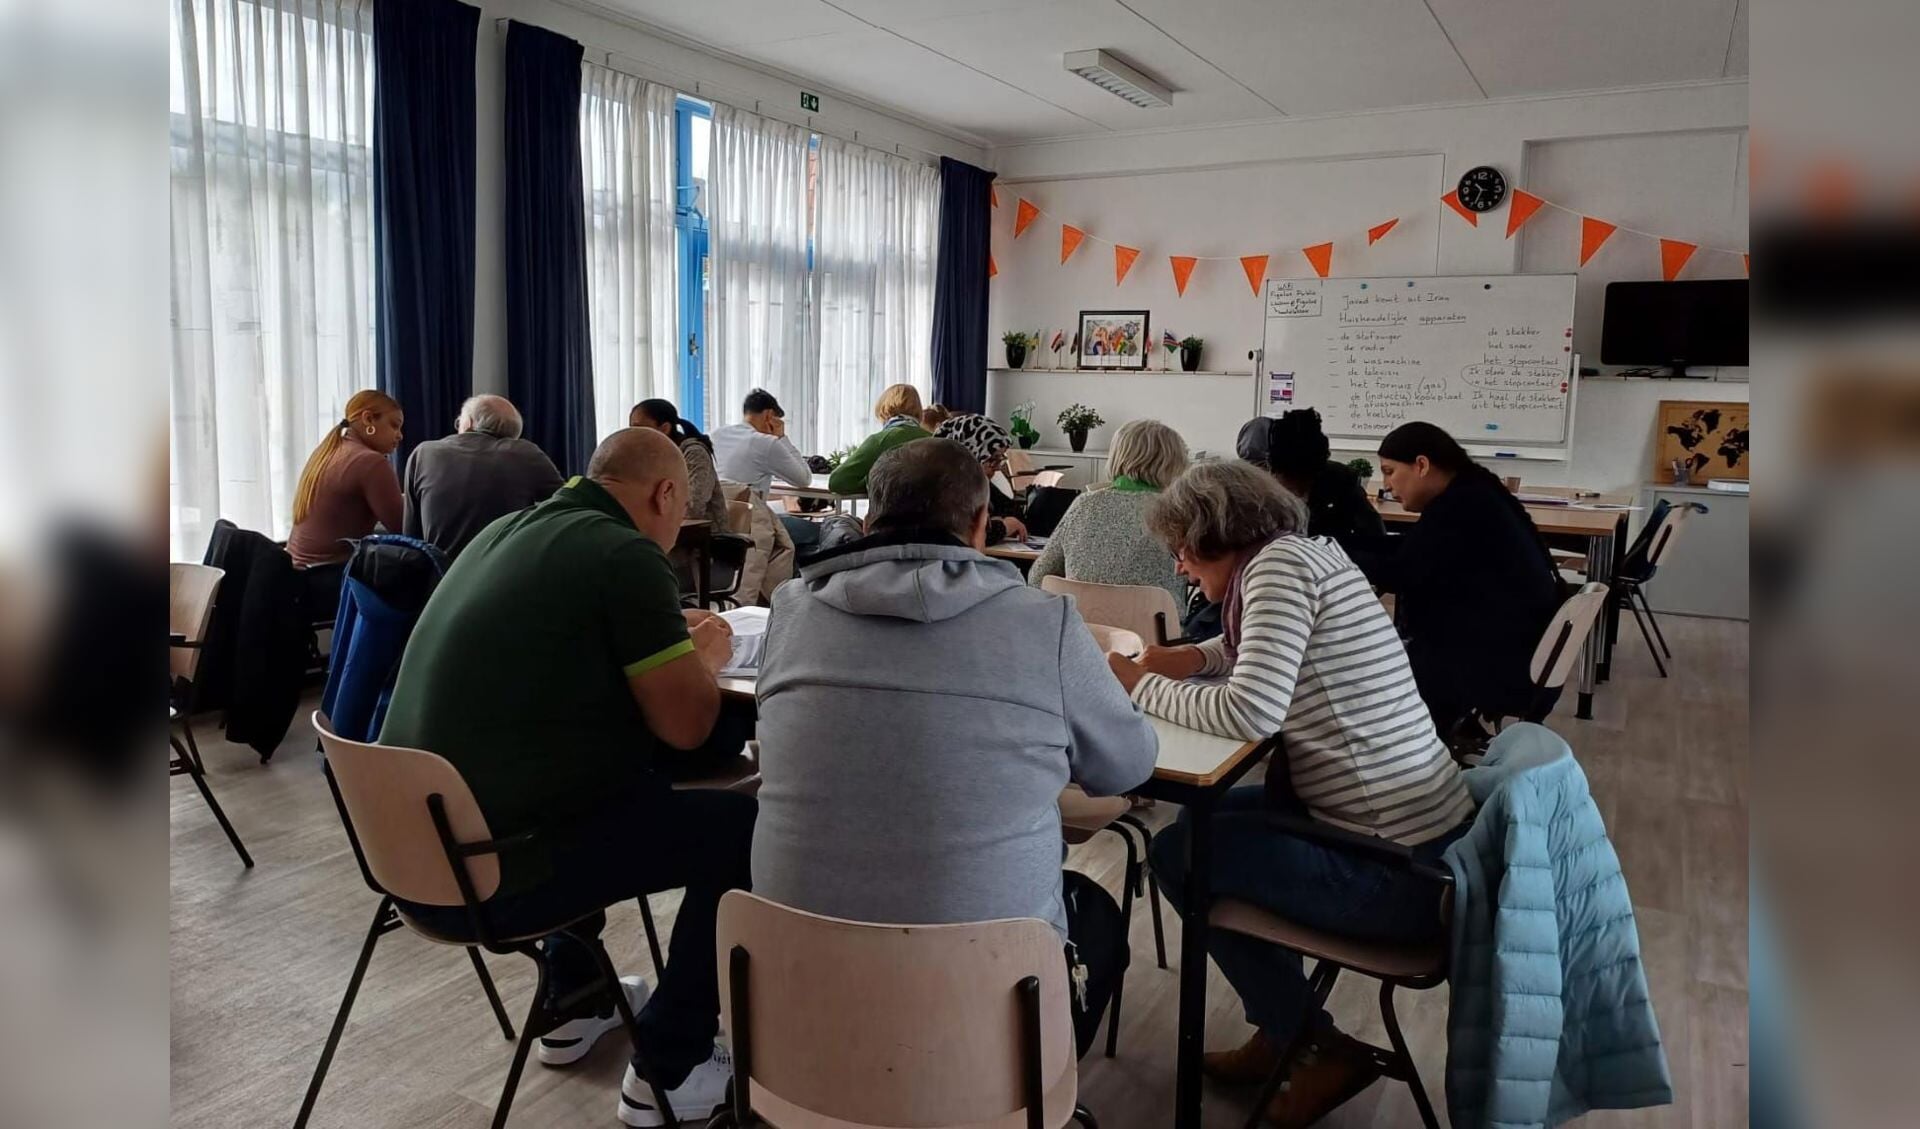 Druk bezig met Nederlands leren in het Taalcafé.